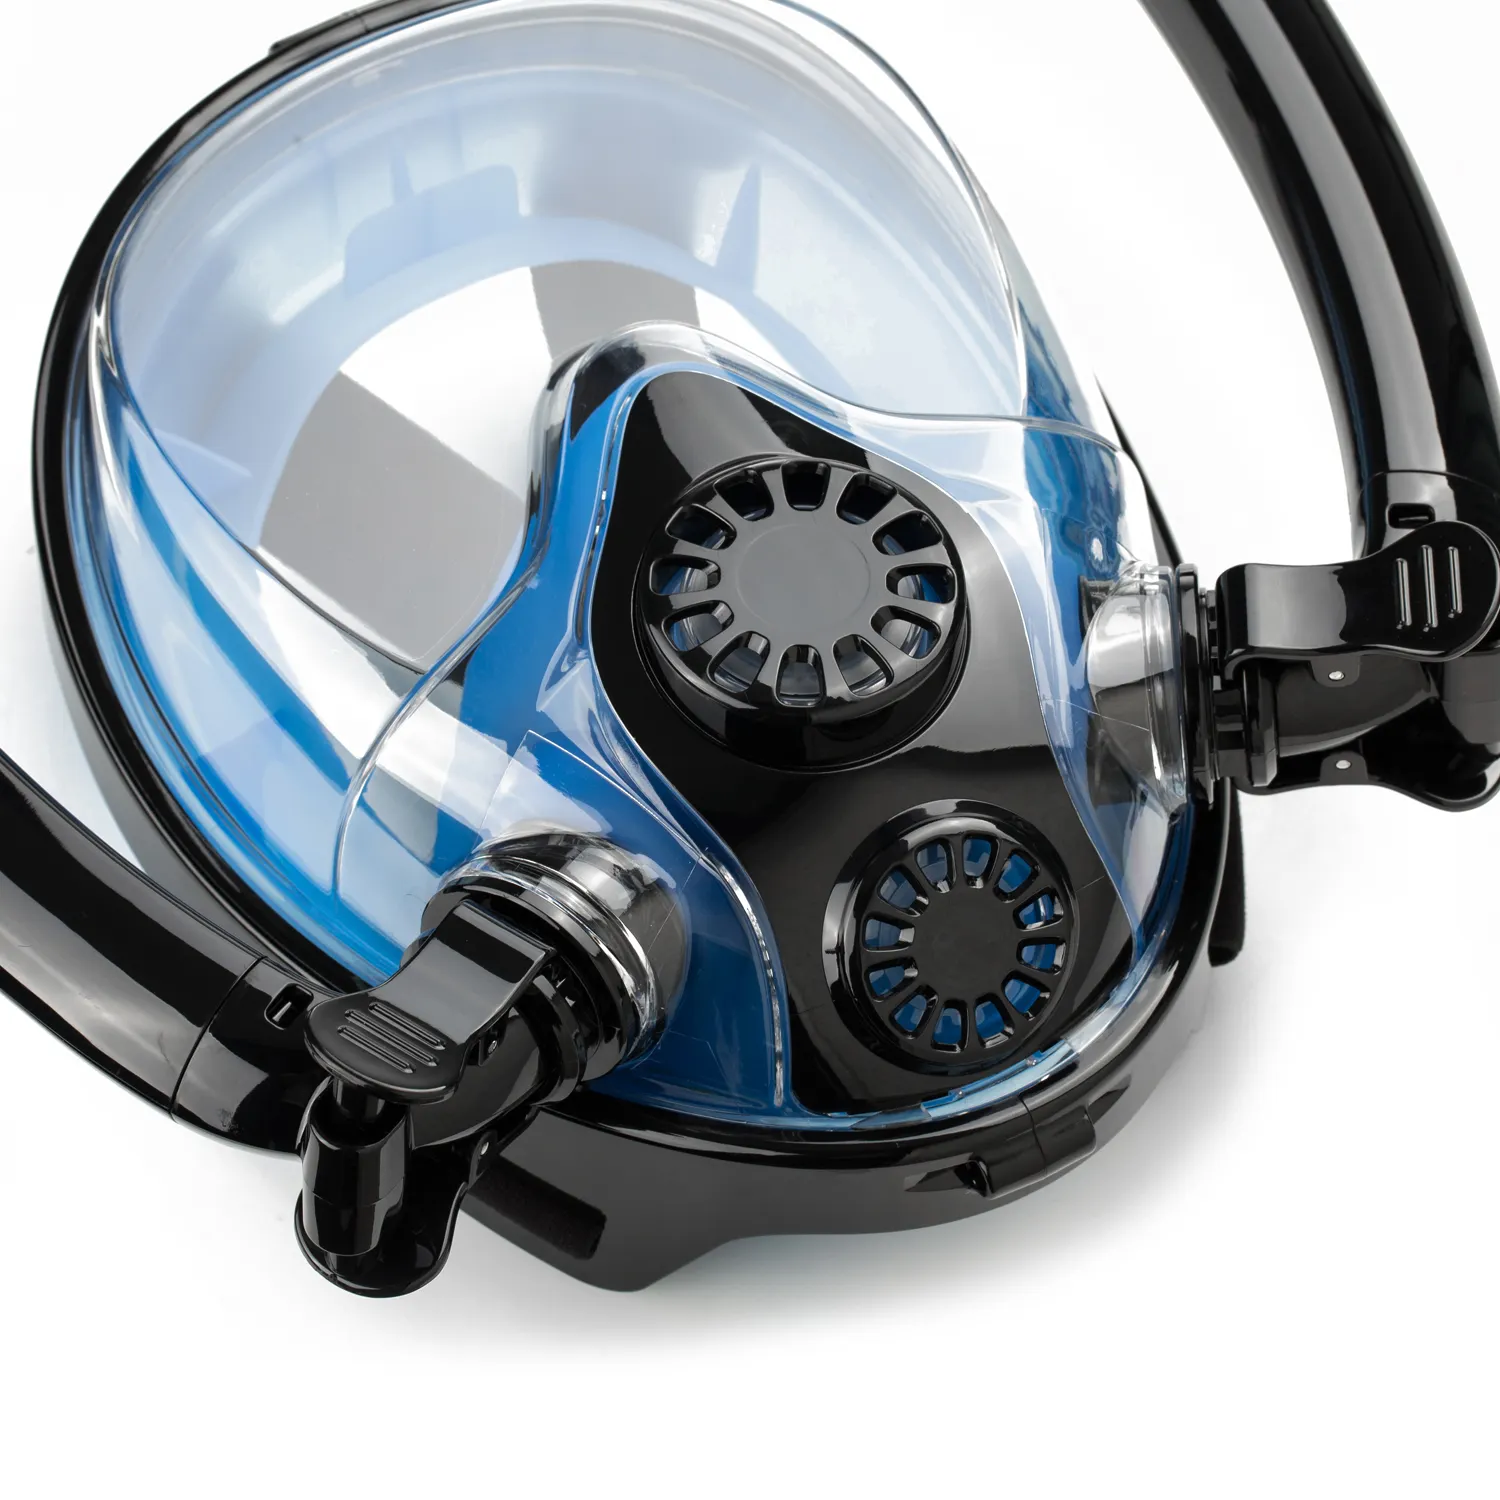 SMACO फैक्टरी प्रत्यक्ष डबल पाइप स्कूबा डाइविंग मुखौटा पानी के नीचे सांस उपकरण श्रृंखला घूर्णन स्नॉर्कलिंग मुखौटा